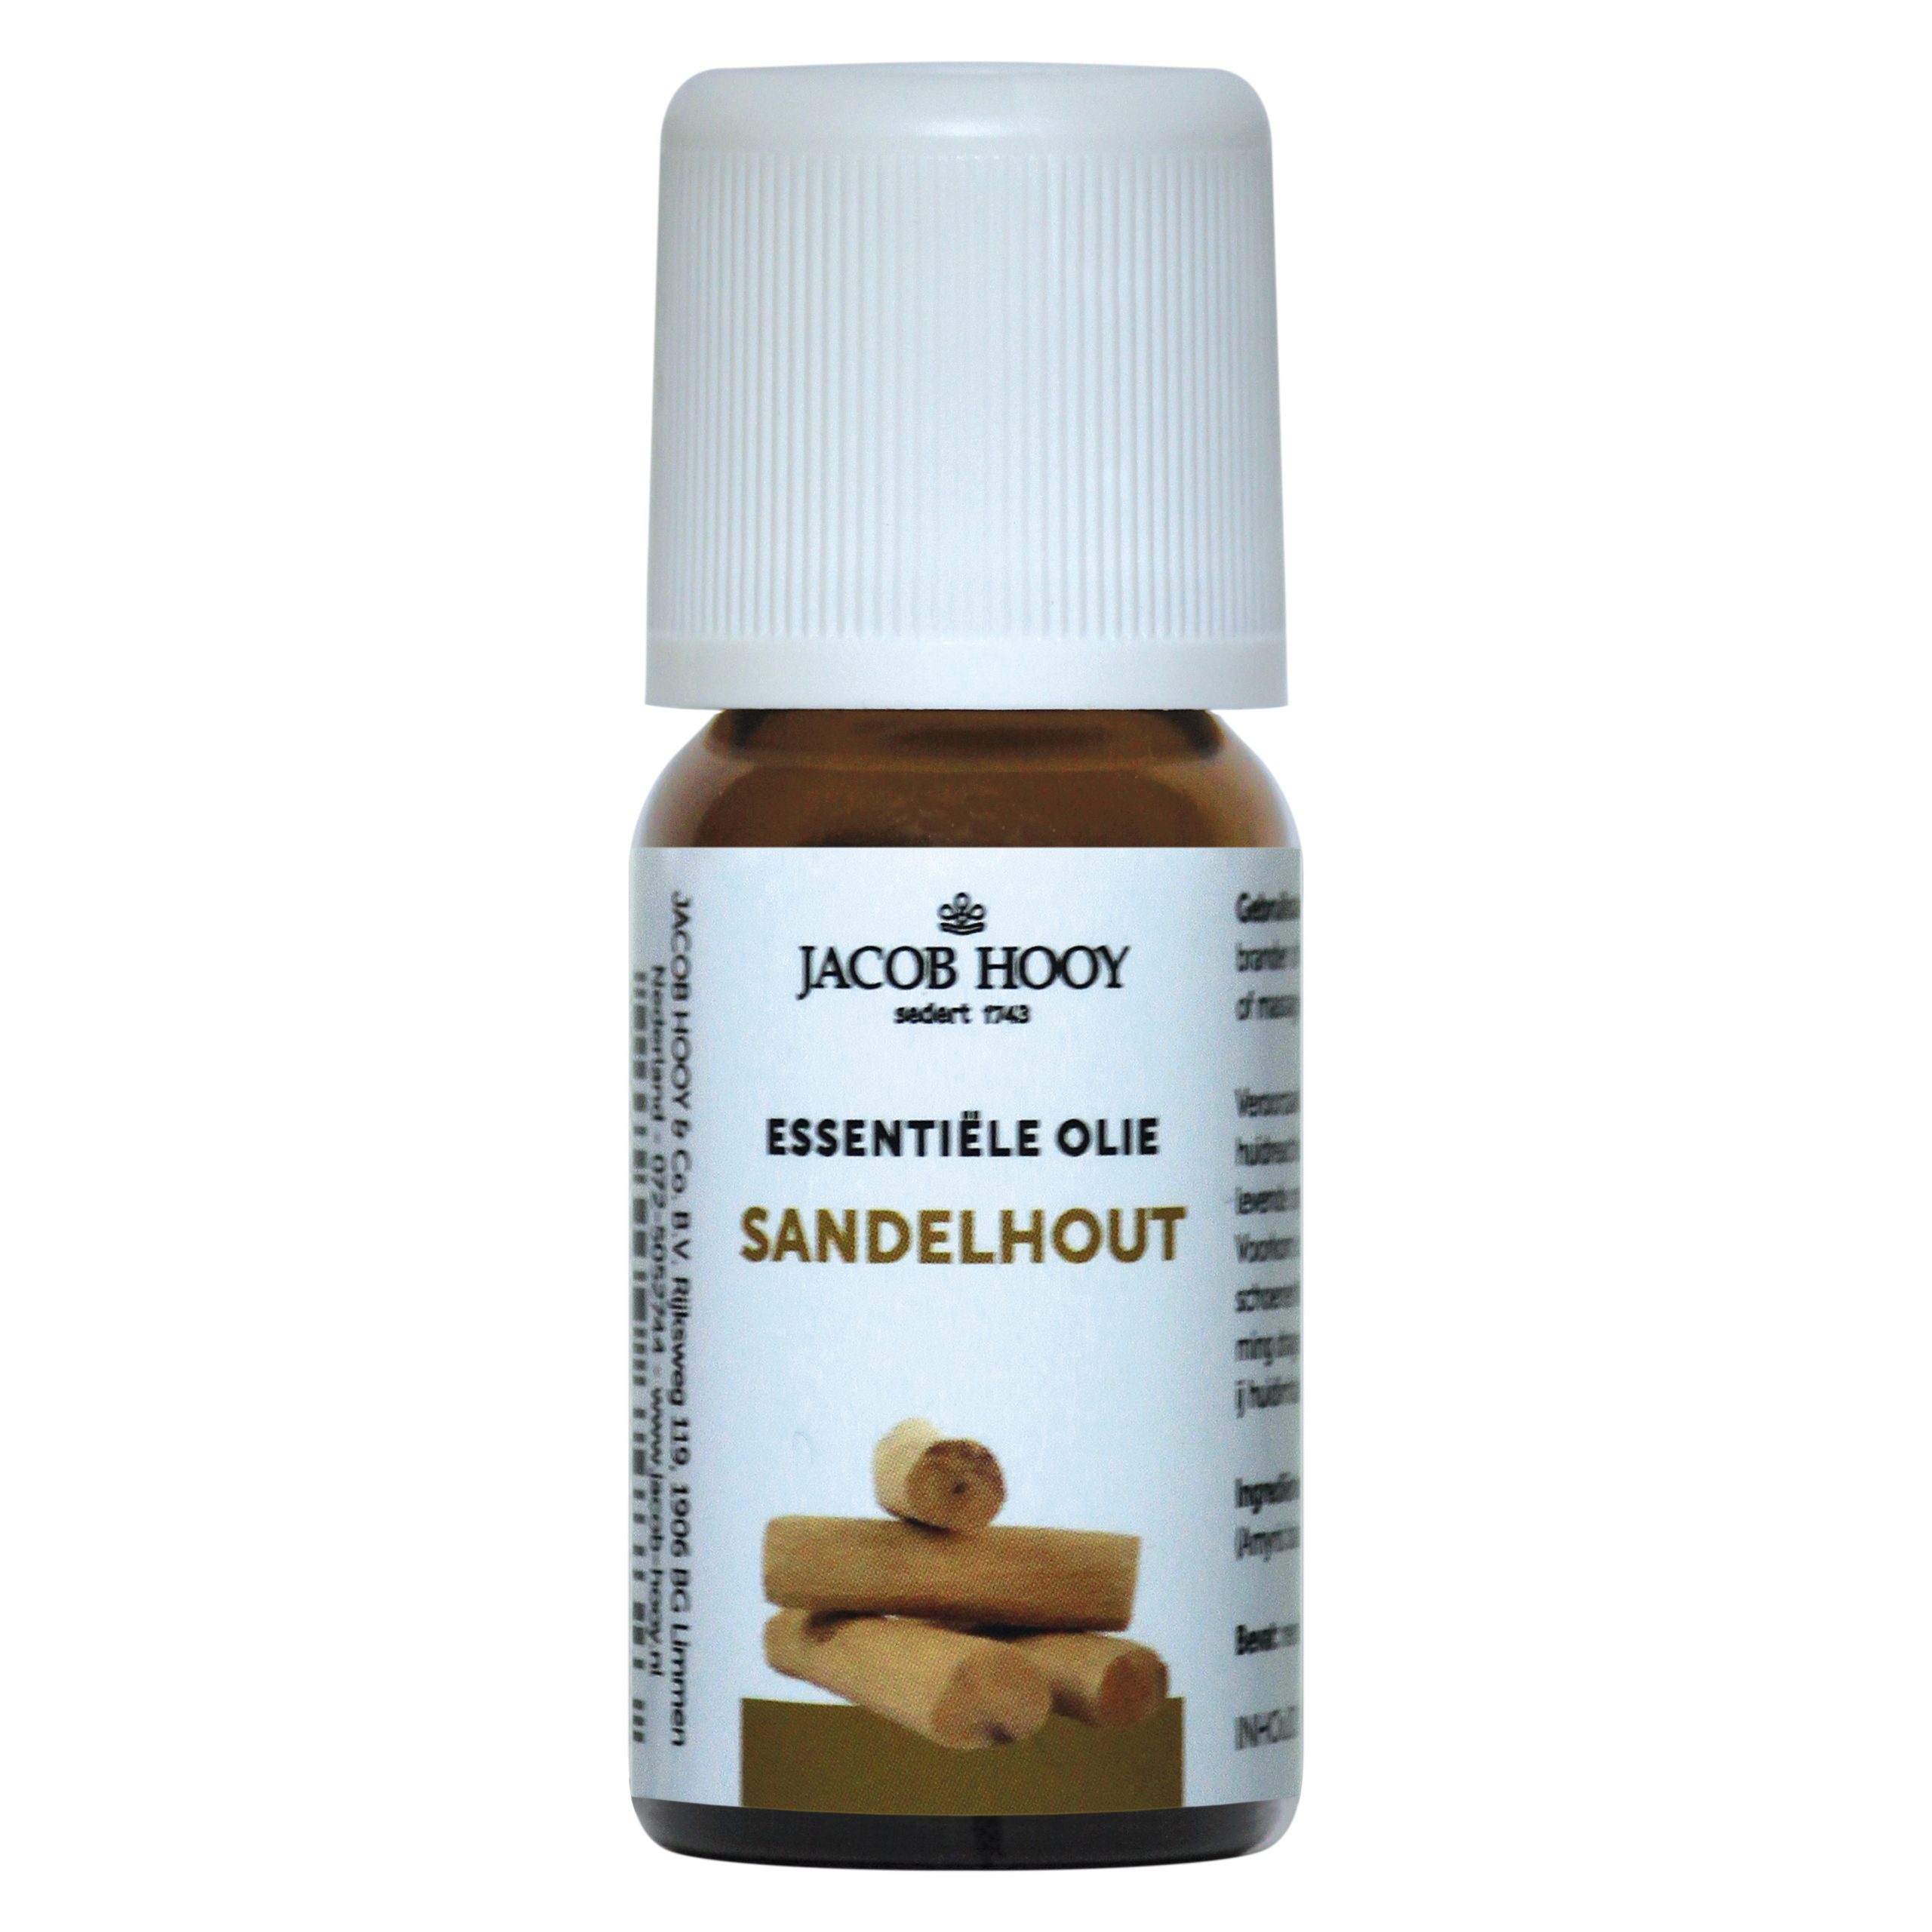 Essentiële olie Sandelhout 10 ml